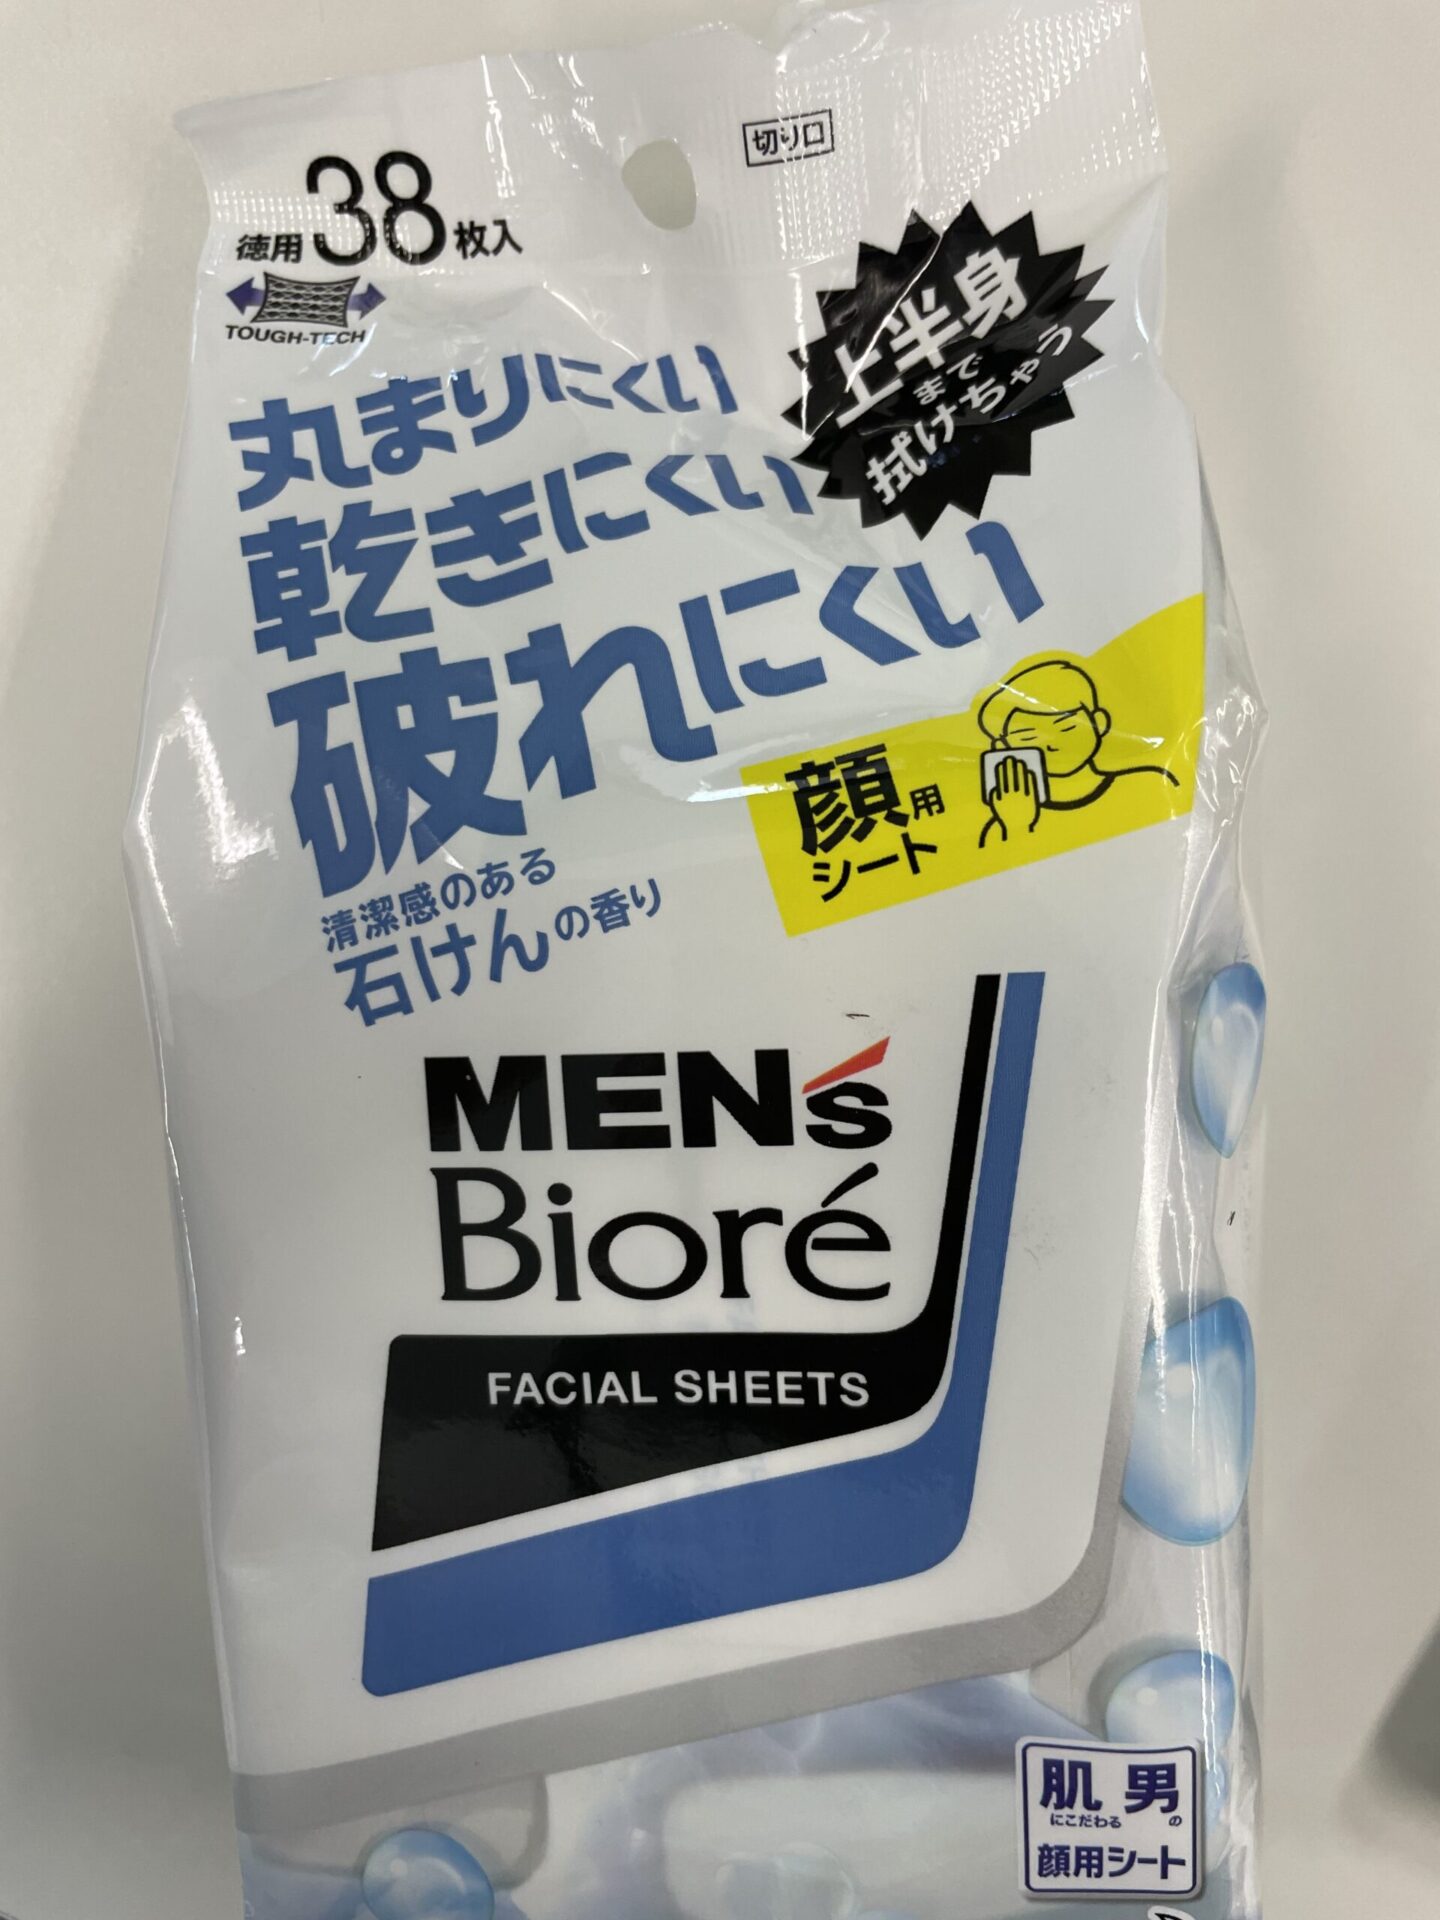 MEN’S Biore FACIAL SHEETS